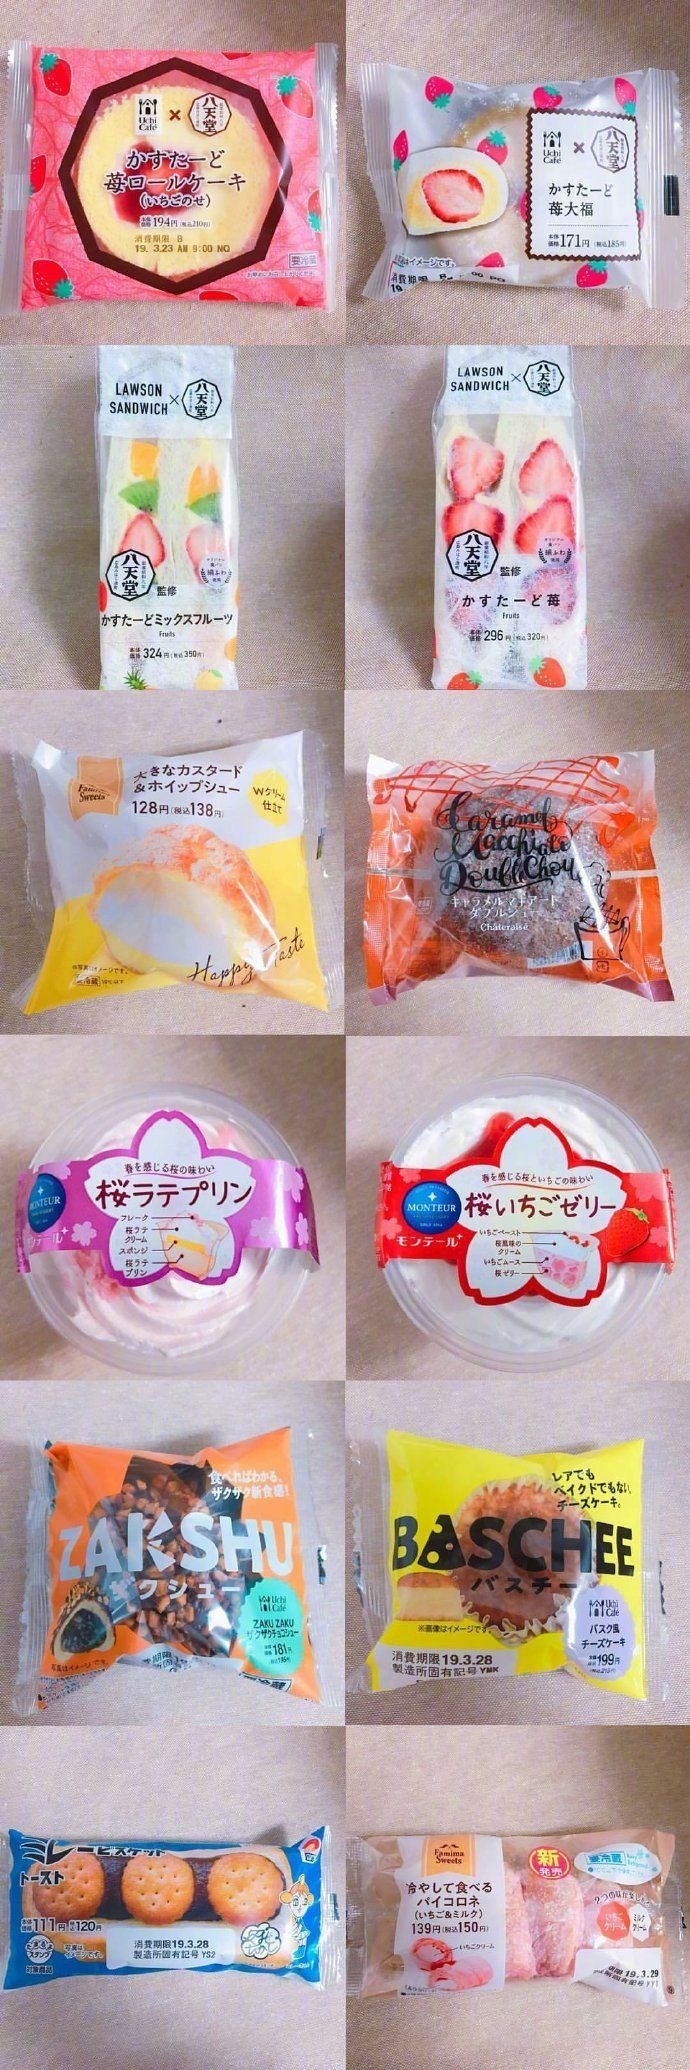 高颜值美味的日本进口甜品蛋糕美食图片大合集